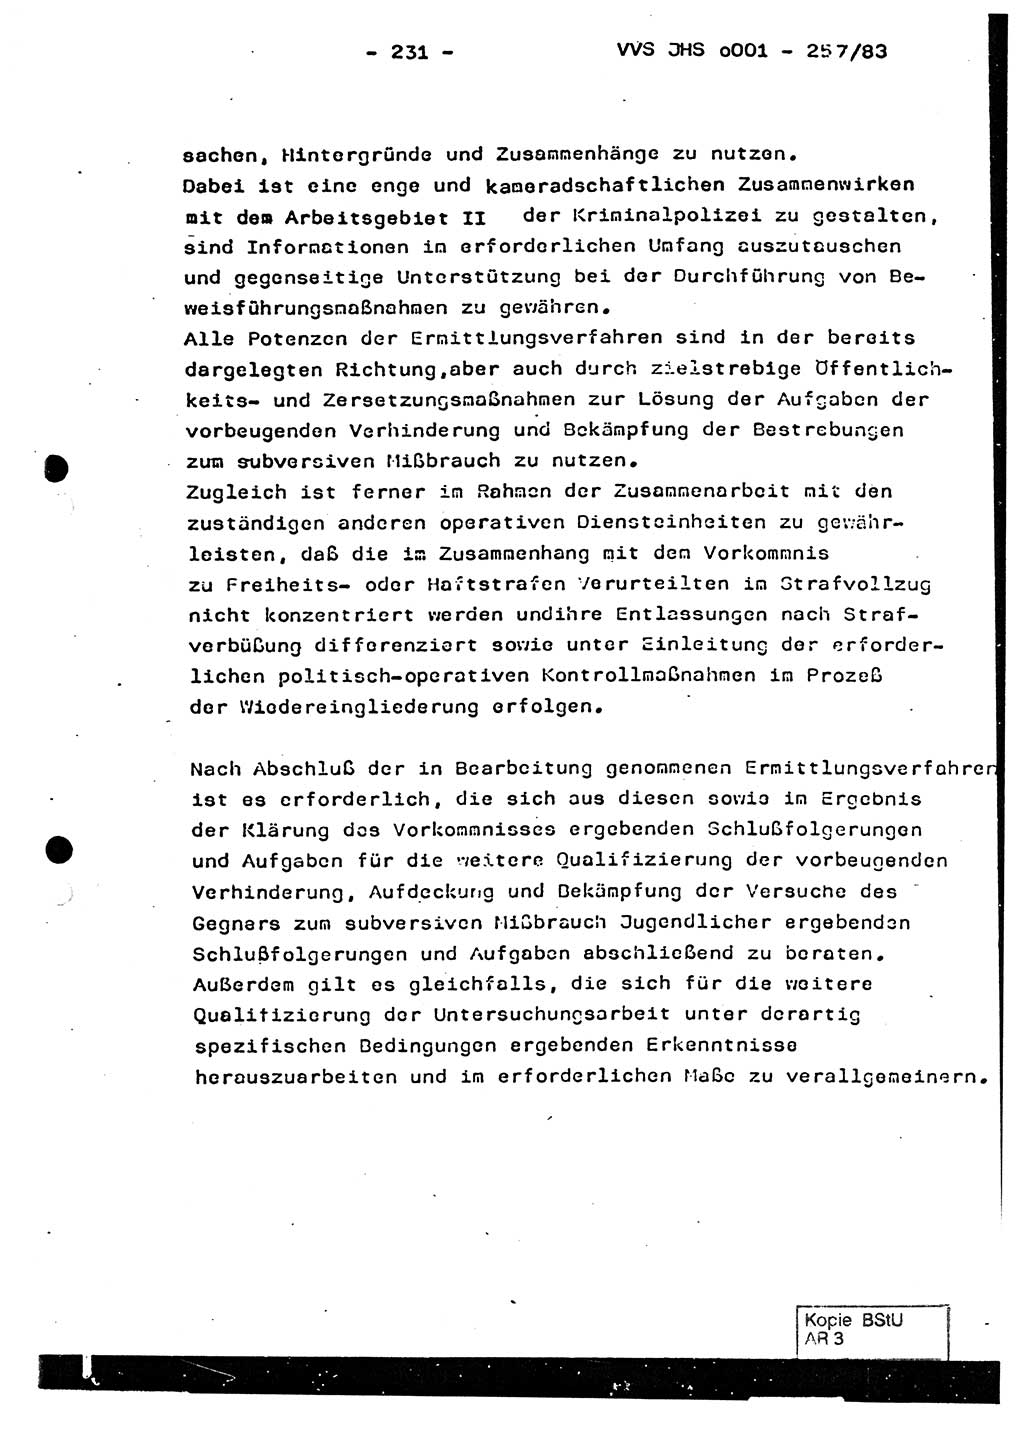 Dissertation, Oberst Helmut Lubas (BV Mdg.), Oberstleutnant Manfred Eschberger (HA IX), Oberleutnant Hans-Jürgen Ludwig (JHS), Ministerium für Staatssicherheit (MfS) [Deutsche Demokratische Republik (DDR)], Juristische Hochschule (JHS), Vertrauliche Verschlußsache (VVS) o001-257/83, Potsdam 1983, Seite 231 (Diss. MfS DDR JHS VVS o001-257/83 1983, S. 231)